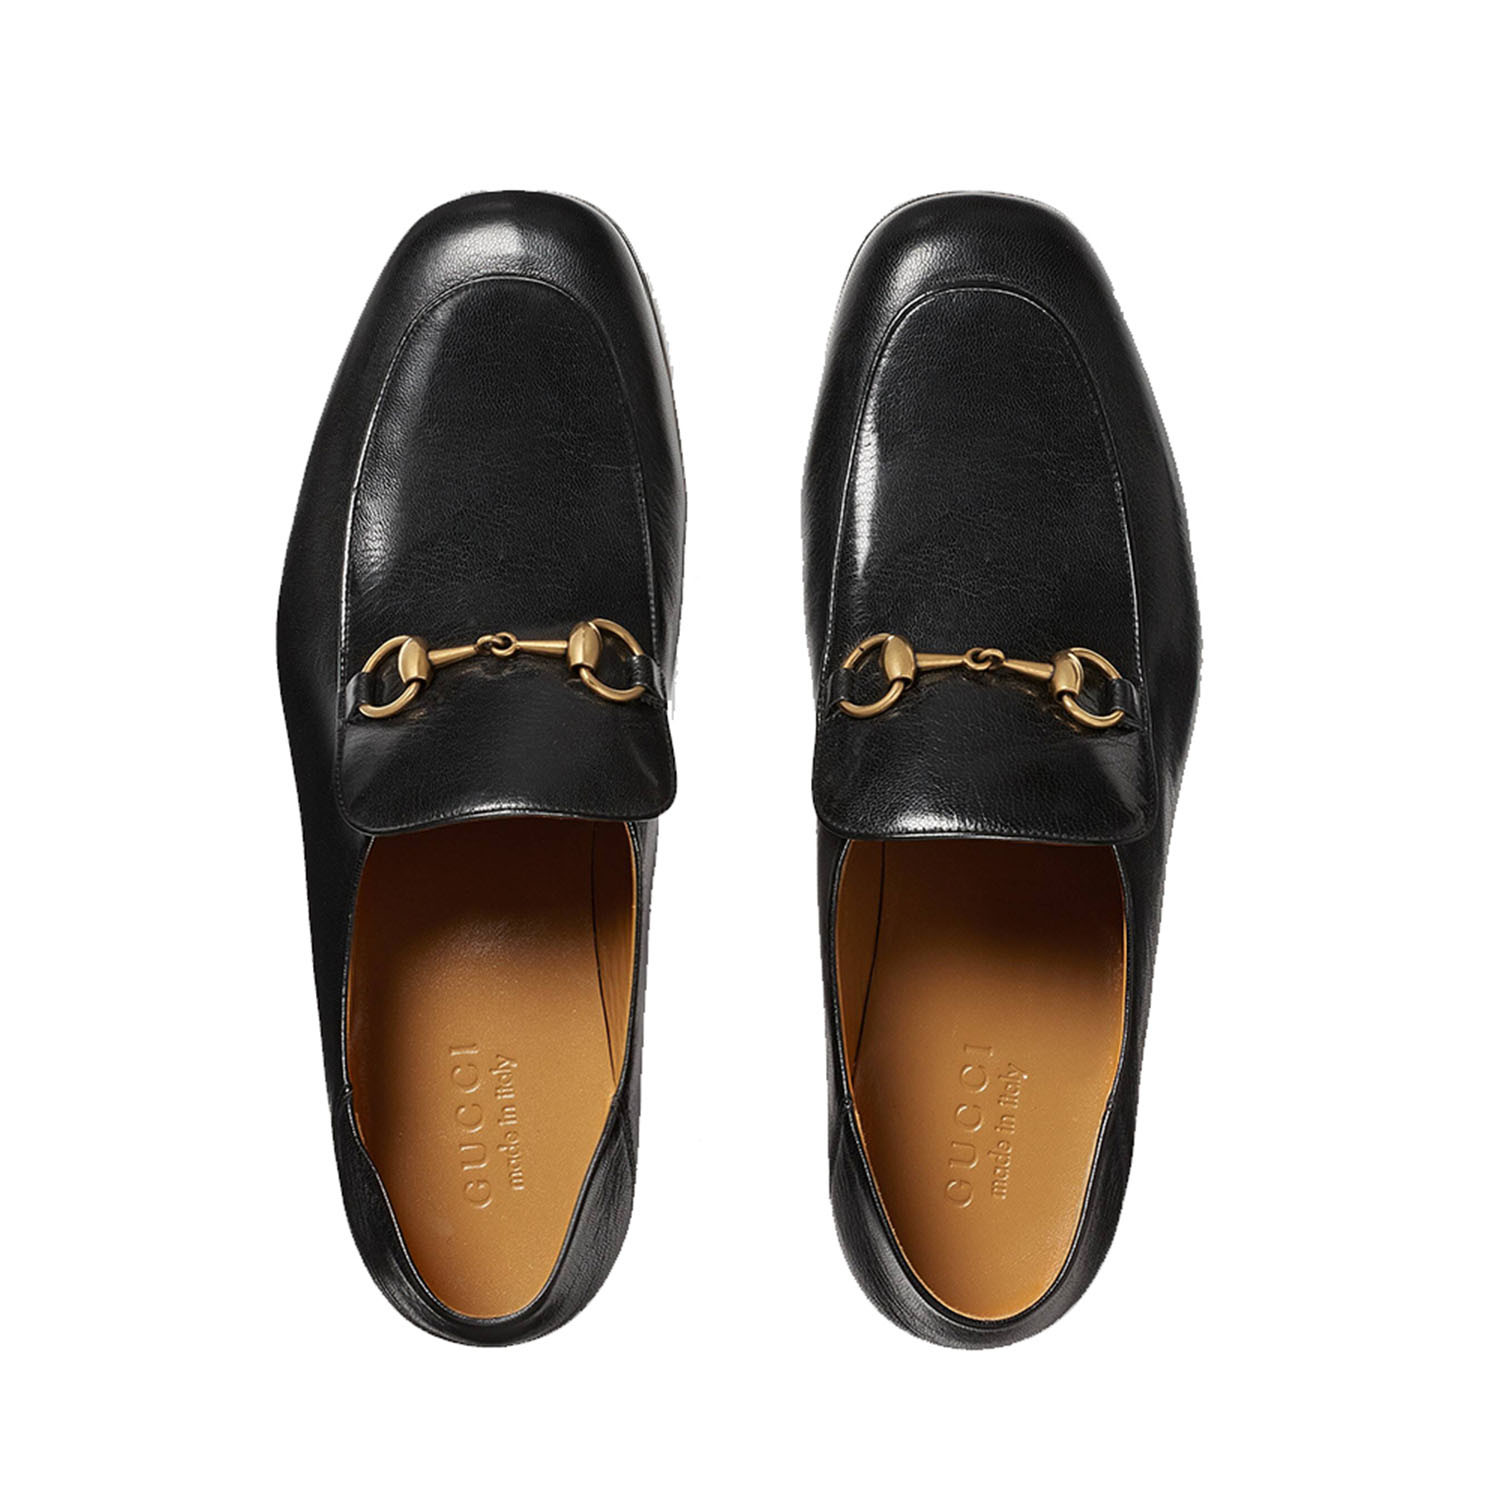 Gucci // Leather Horsebit Loafer Shoes // Black (US 8) - Men's Designer ...